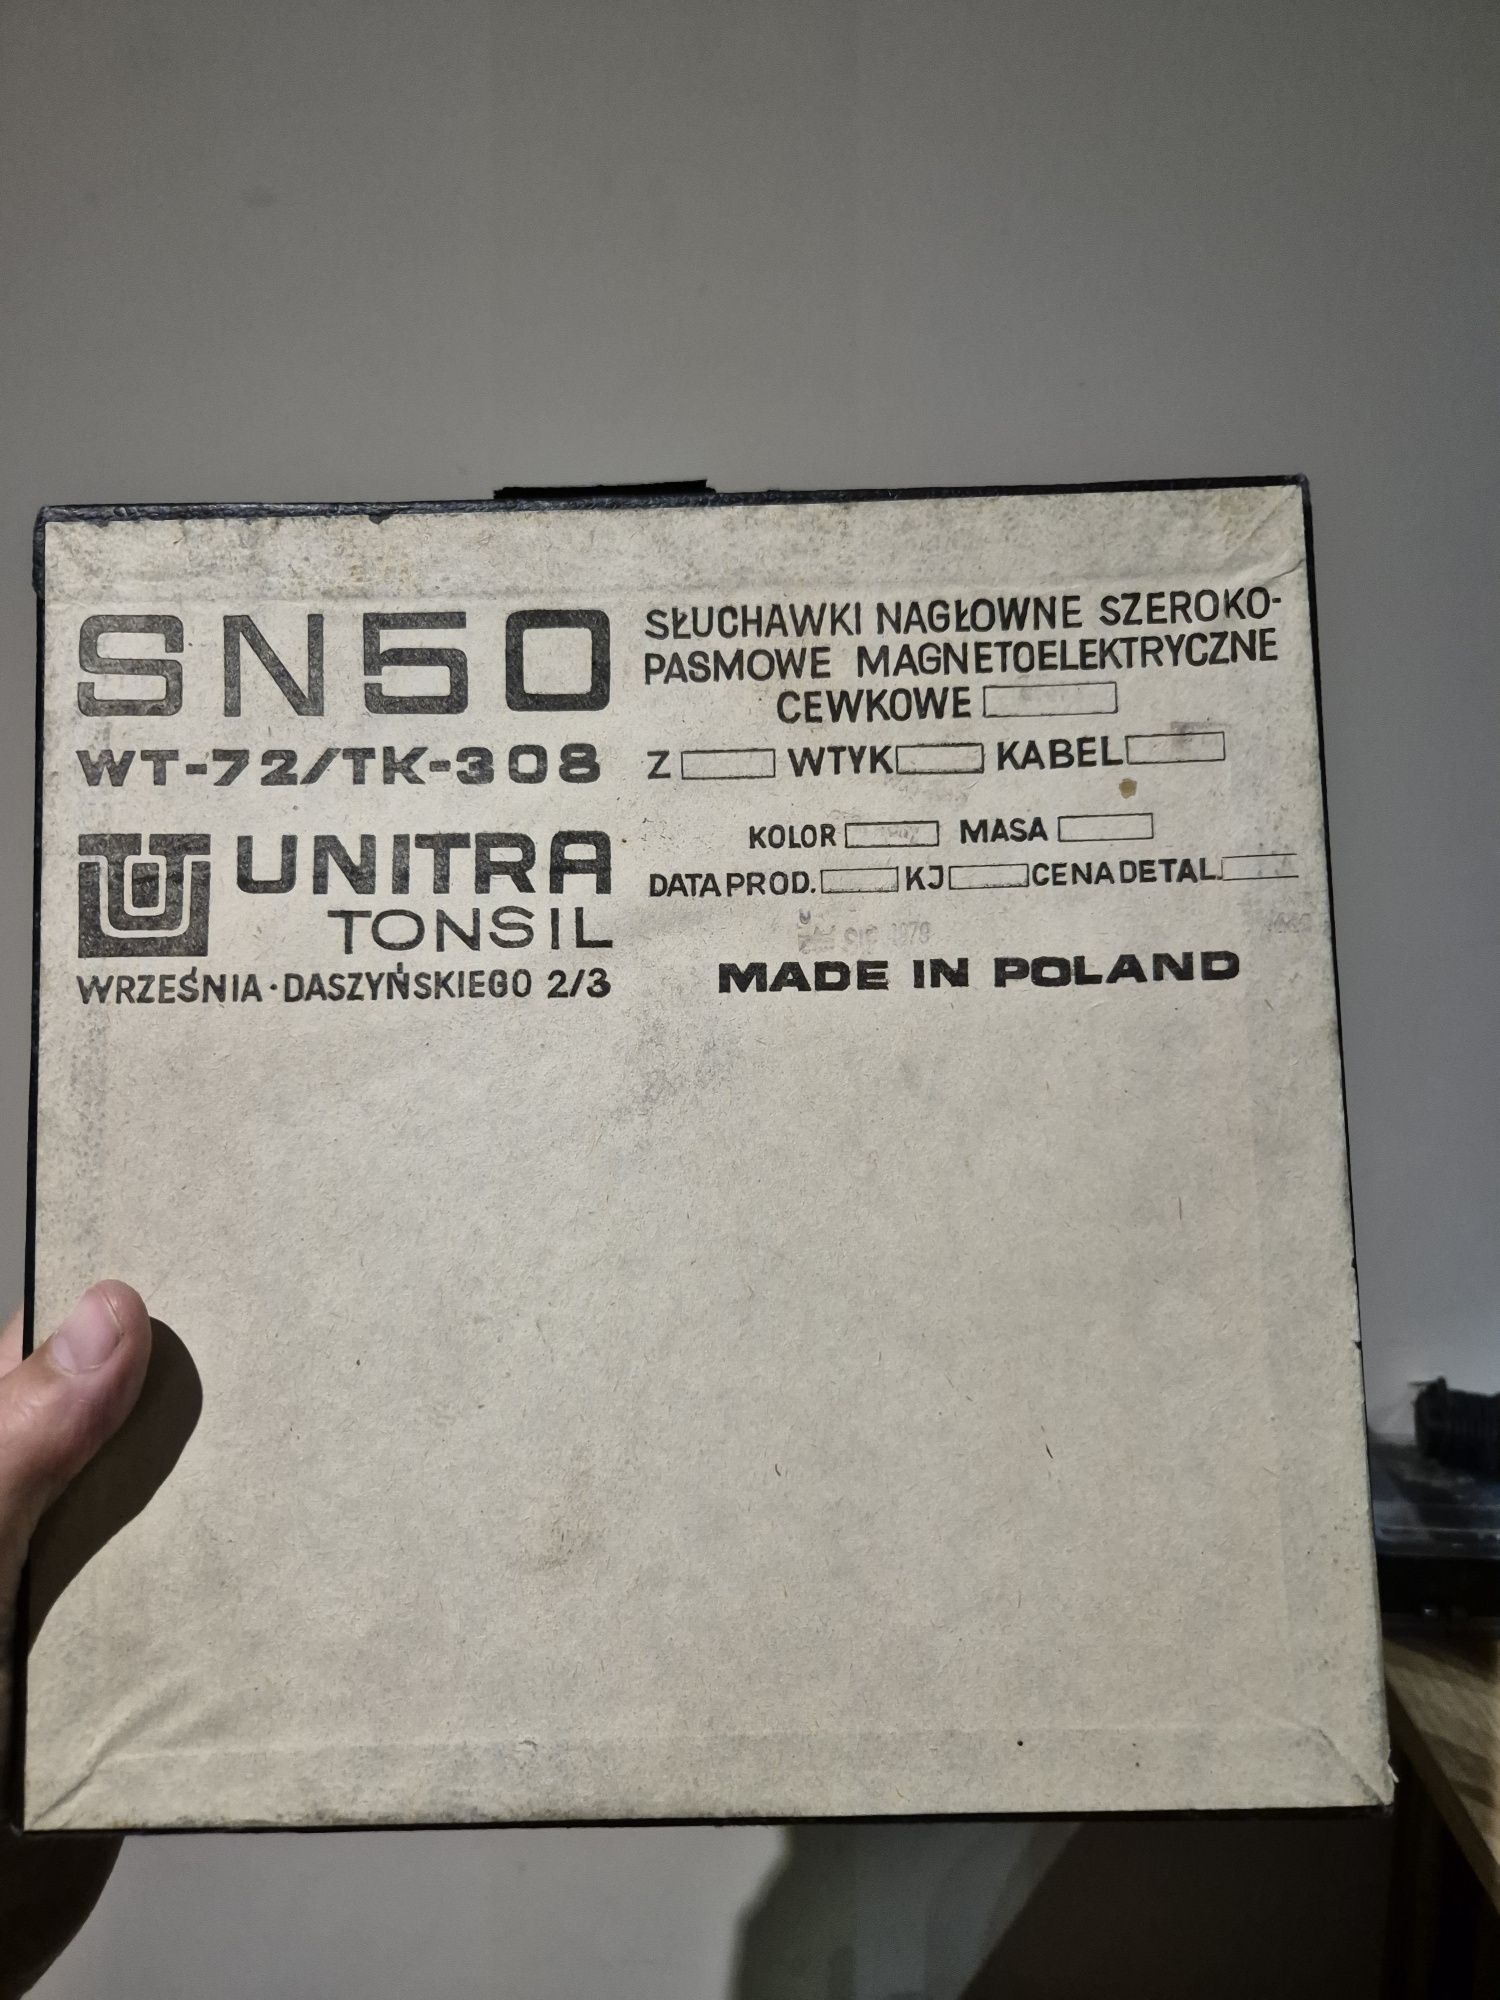 Sluchawki Tonsil Unitra SN50 vintage retro z 1979